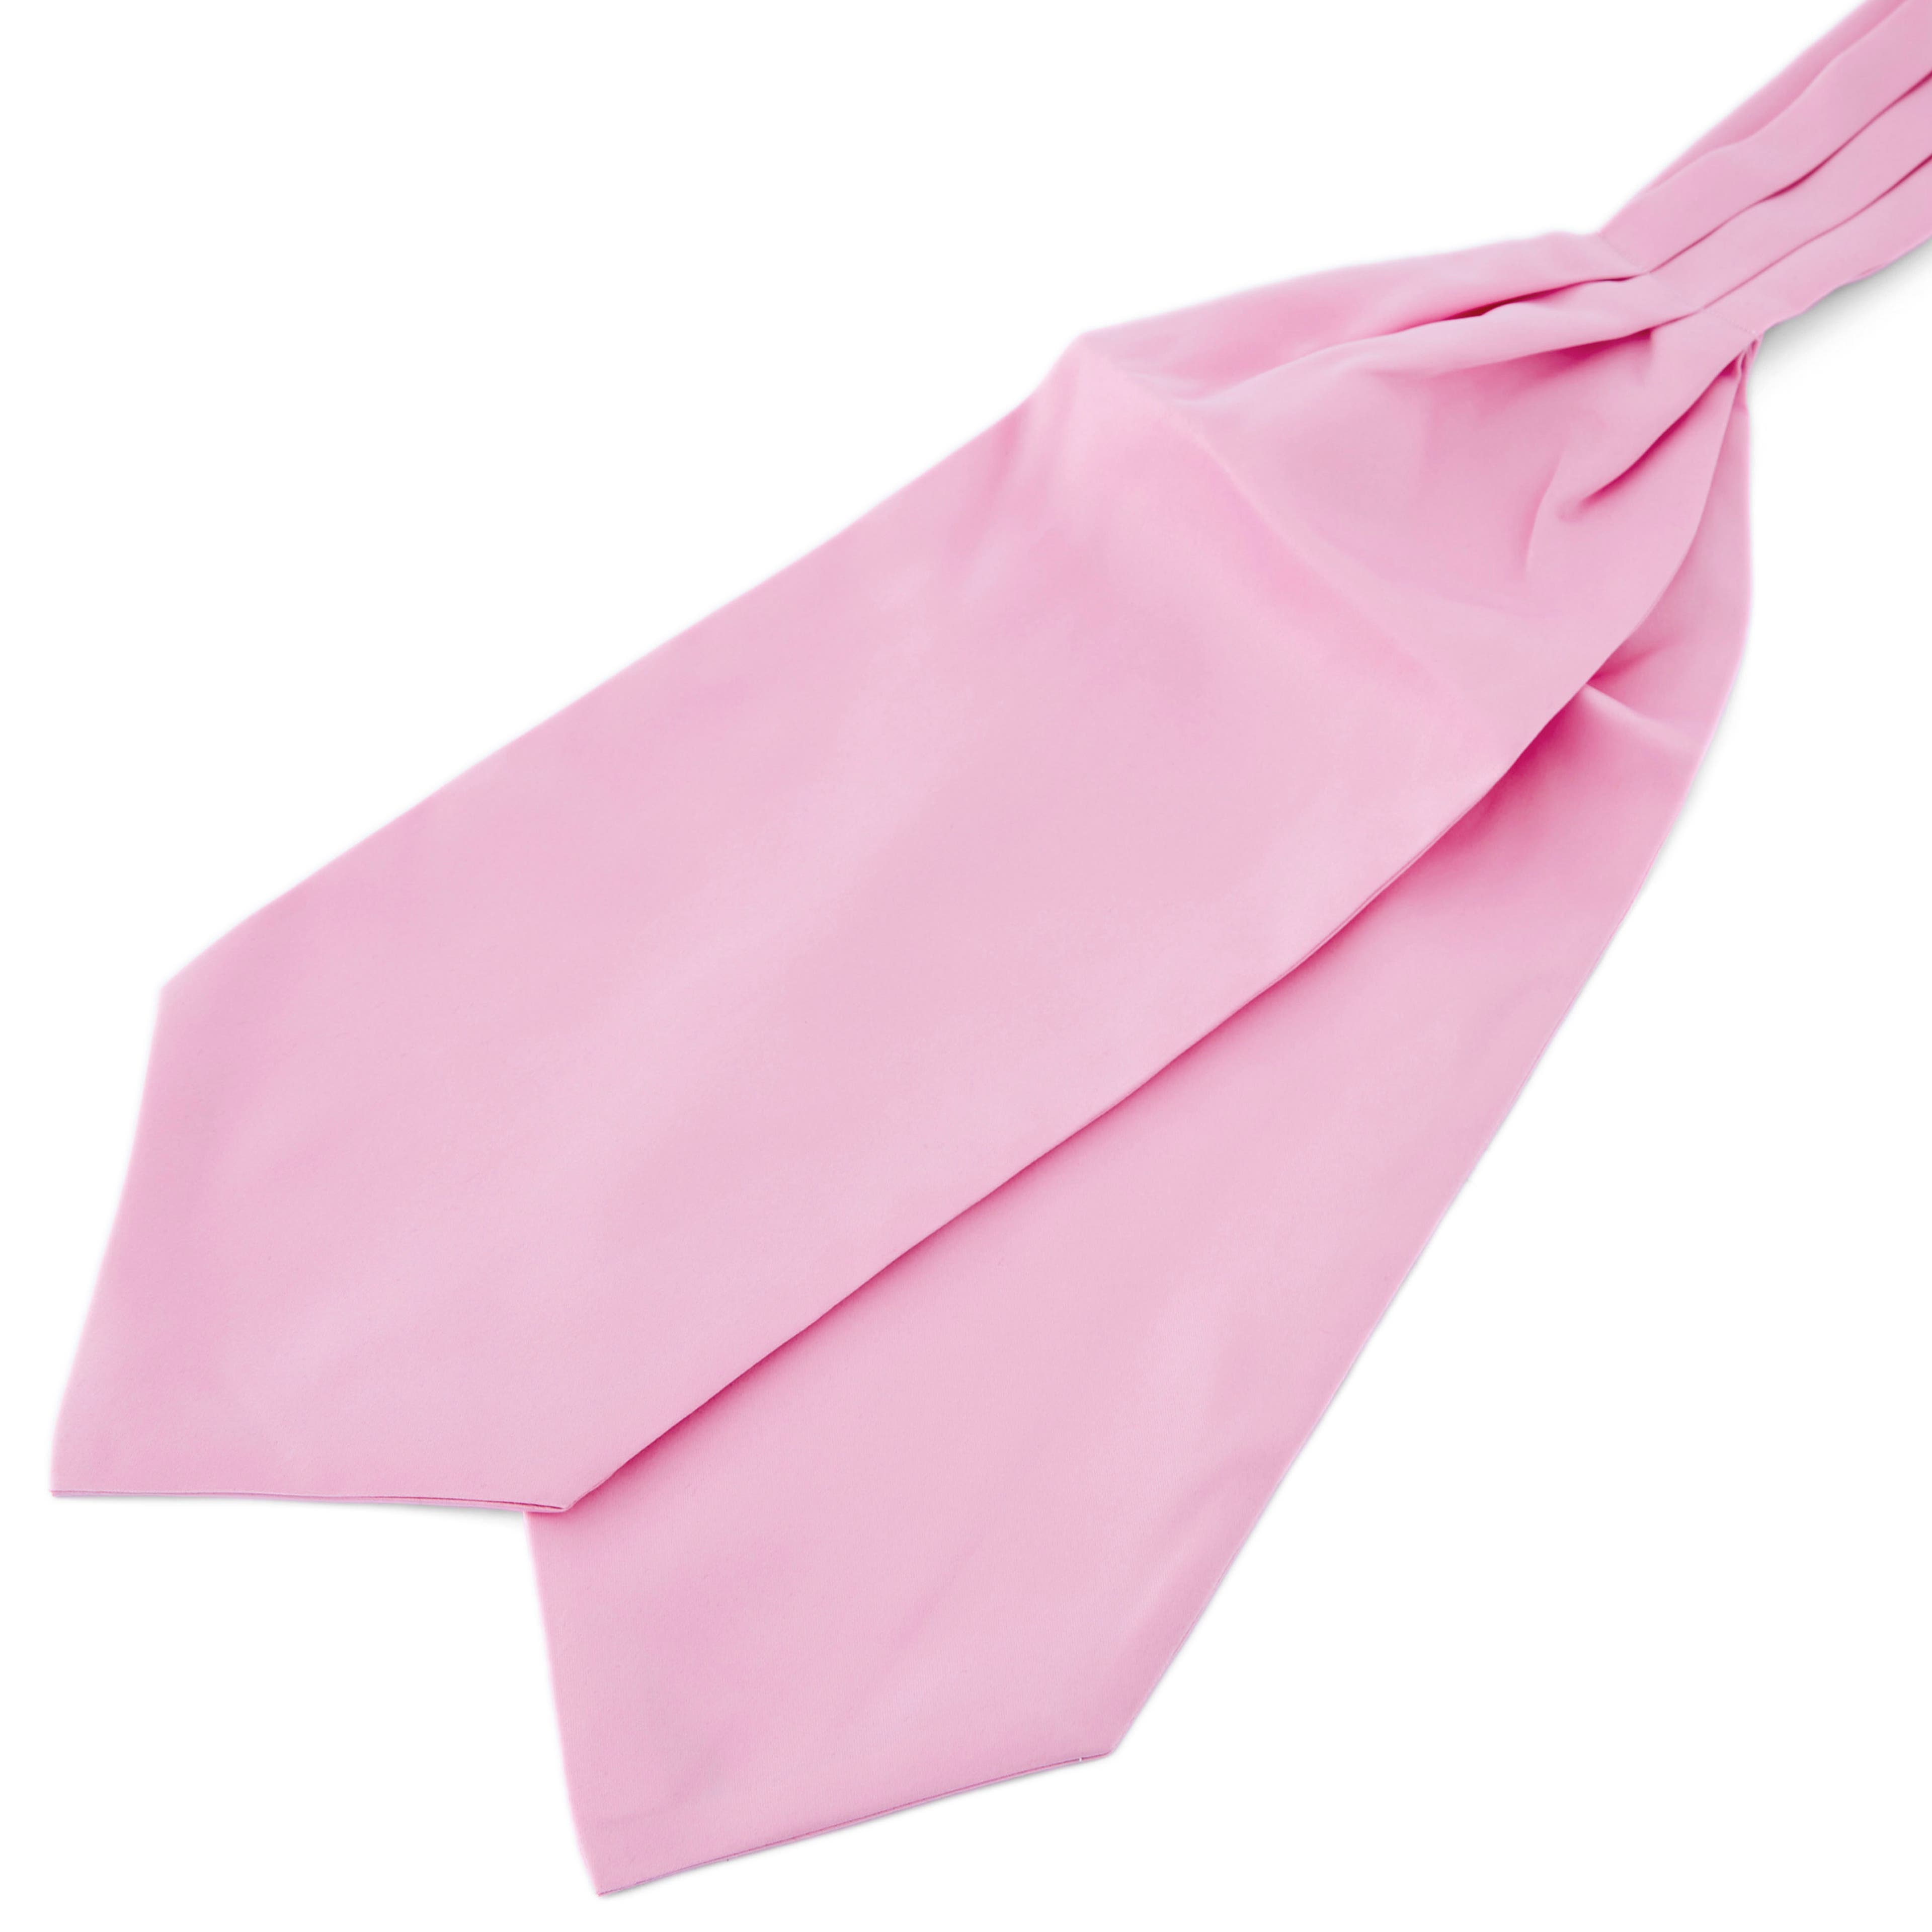 Semplice cravatta ascot rosa chiaro